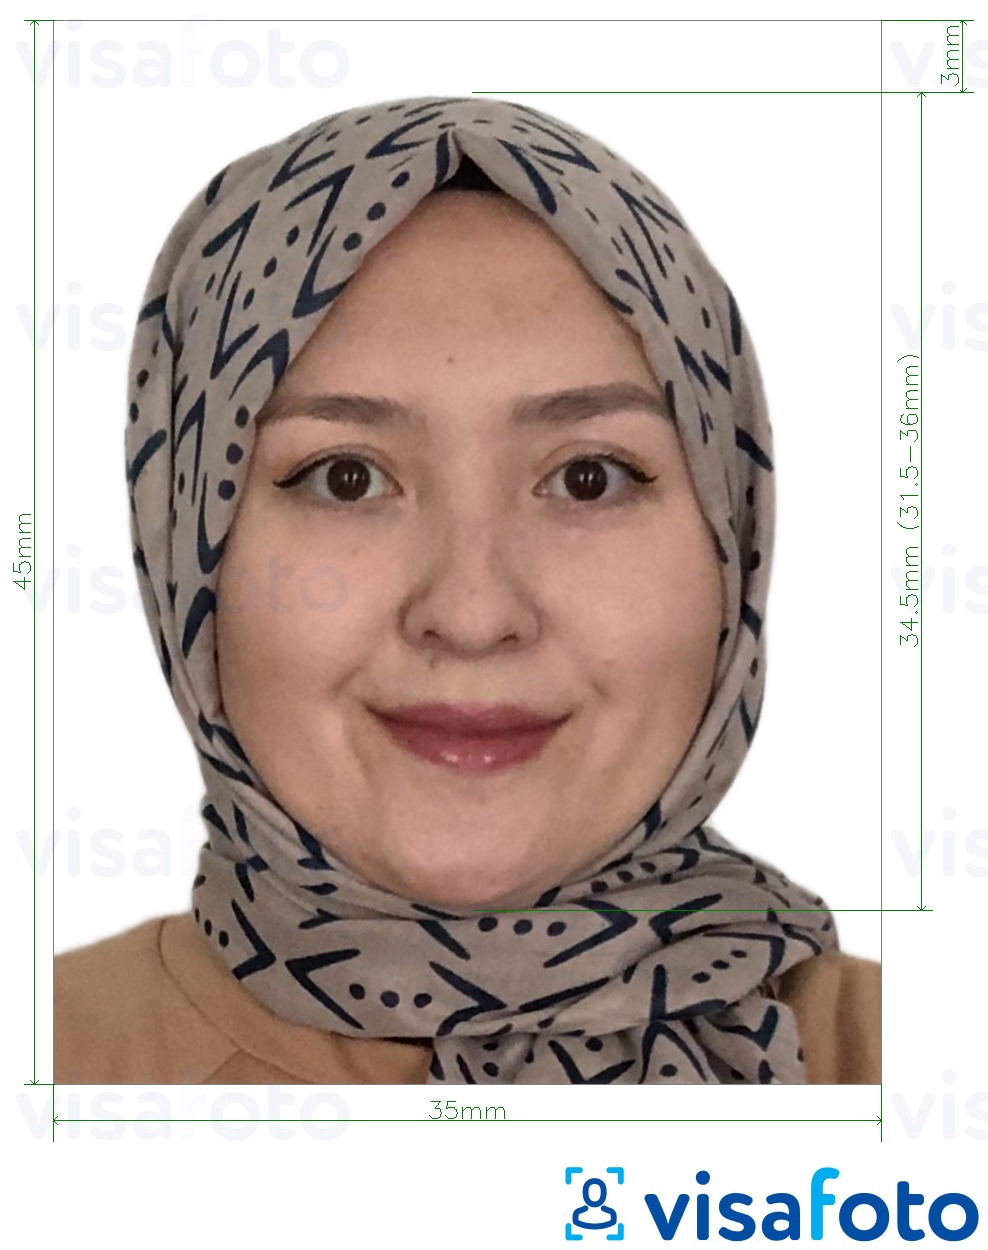 Exemplo de foto para Tajiquistão passaporte 3,5x4,5 cm (35x45 mm) com especificação exata de dimensão